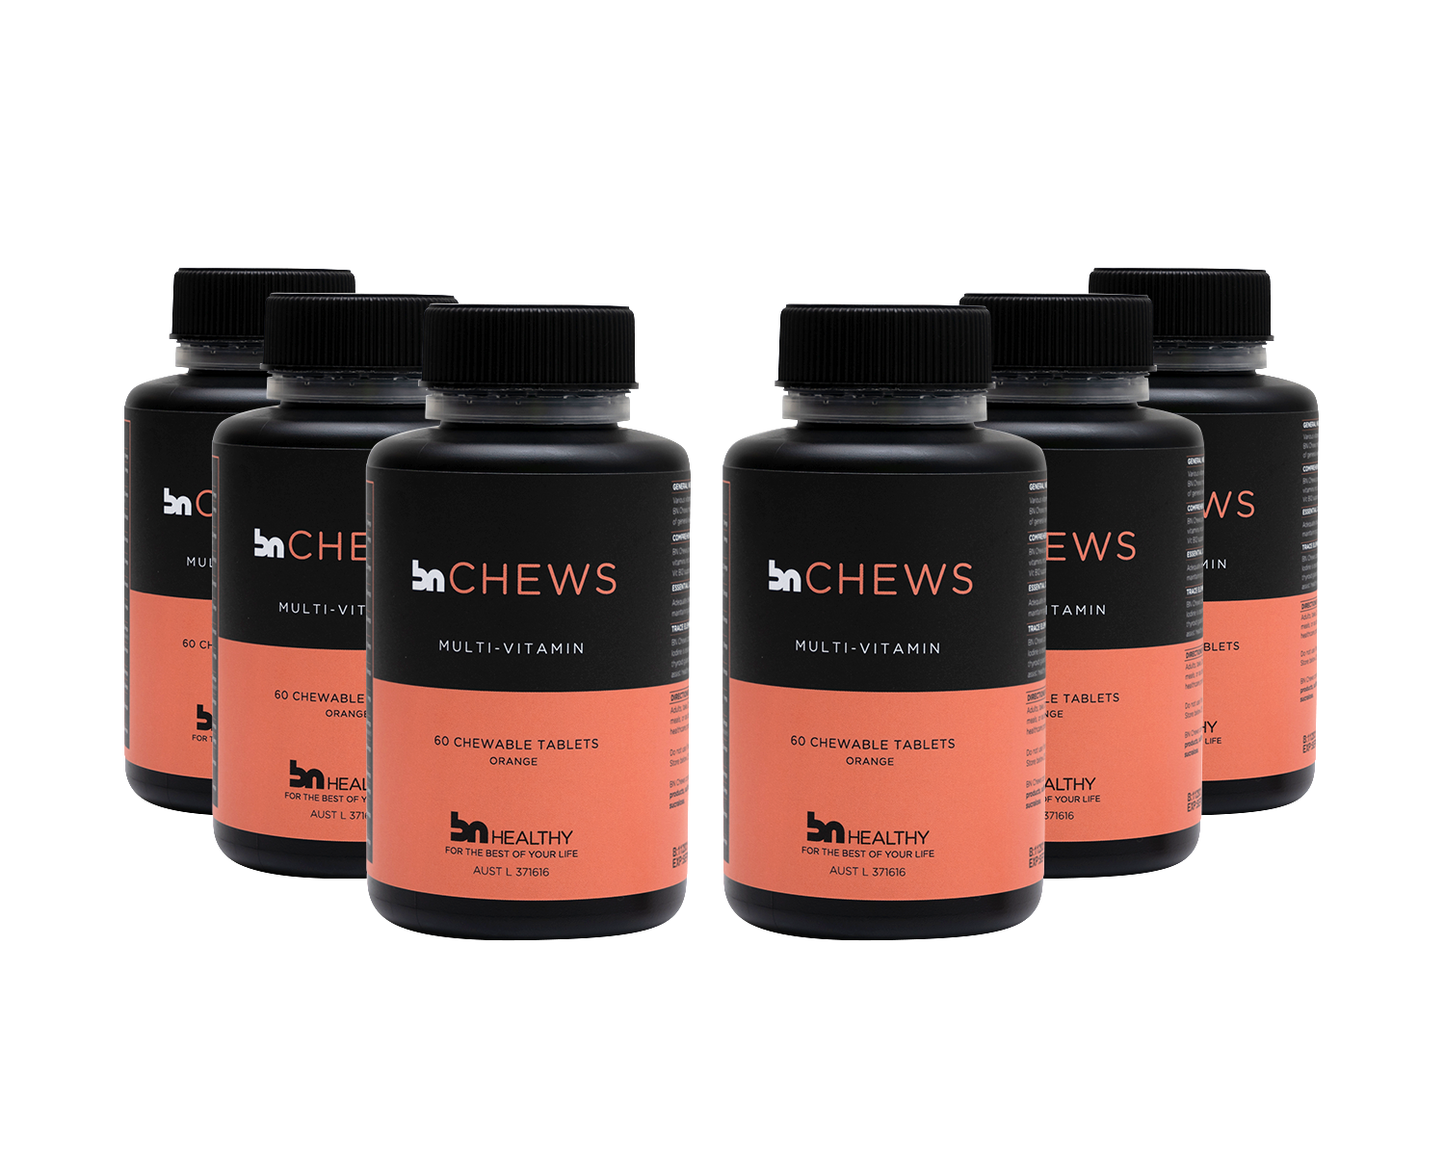 BN Chews - Chewable Multivitamins - 6 Bottles - Save 20%